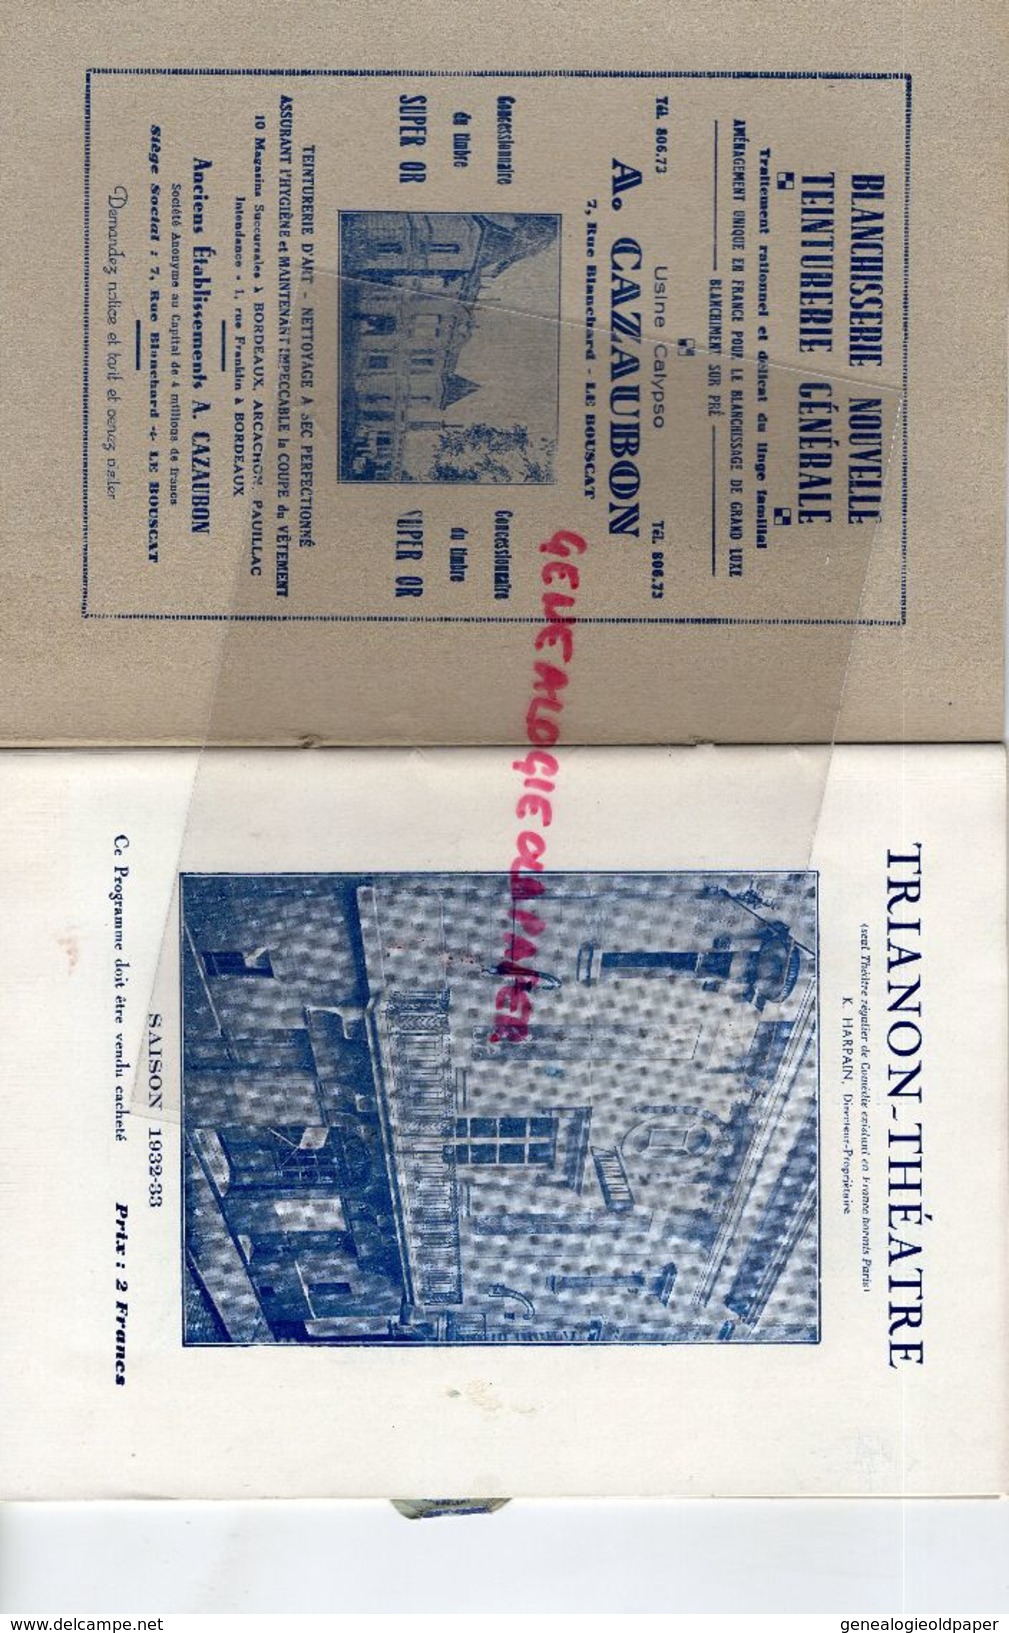 33- BORDEAUX- PROGRAMME THEATRE TRIANON SAISON 1932-33-A.CAZAUBON LE BOUSCAT-UNIVERSAL HOTEL-DARCY-CASTERA-LOUIS LEGER - Programs